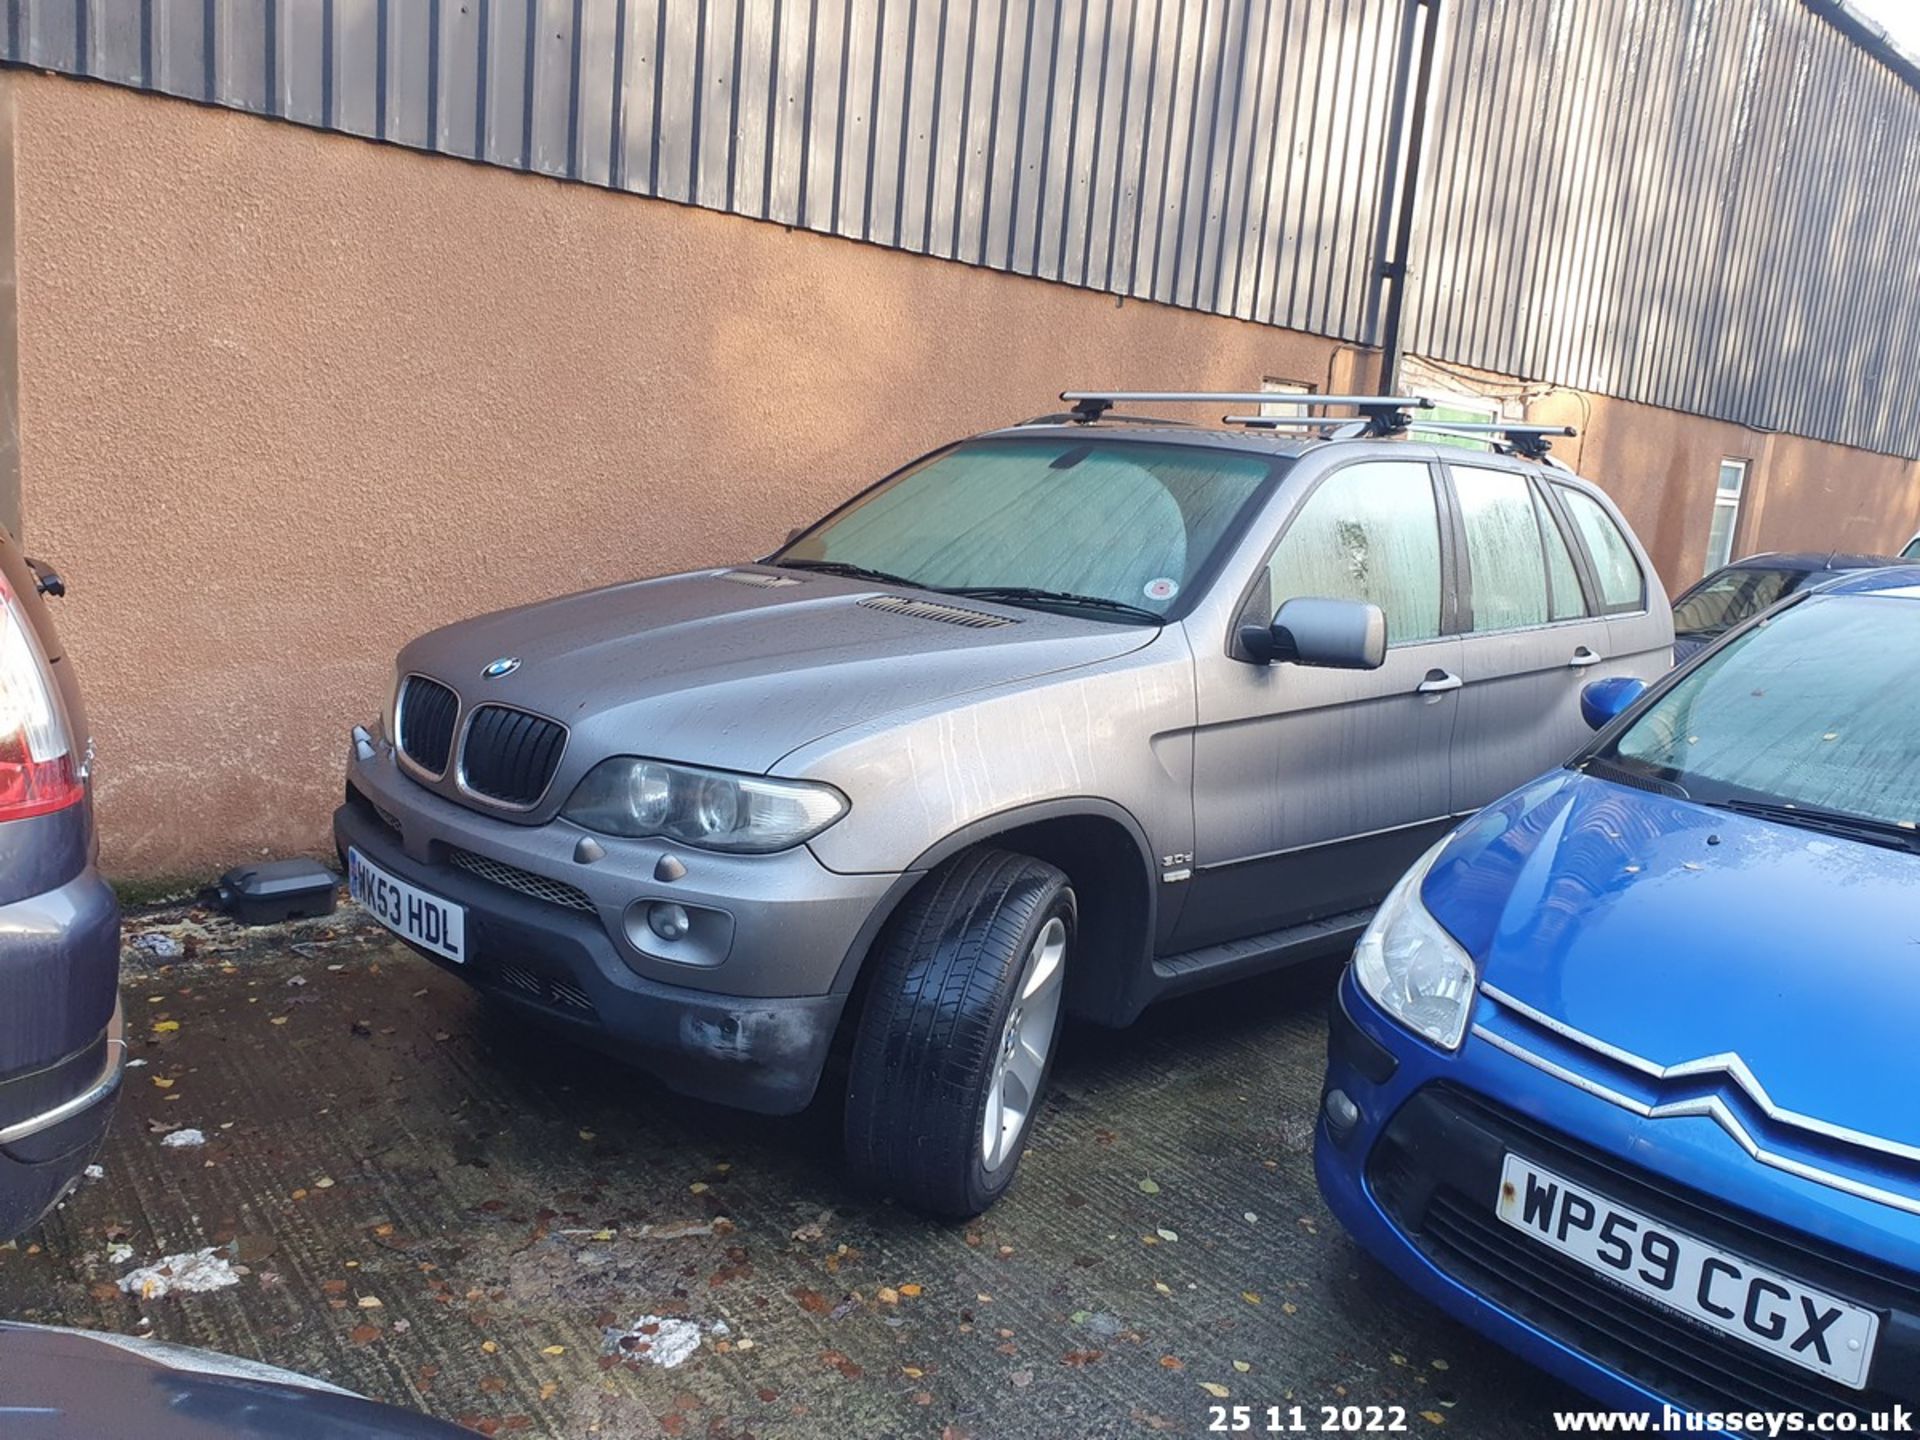 03/53 BMW X5 SPORT D AUTO - 2993cc 5dr Estate (Grey, 130k) - Image 25 of 27